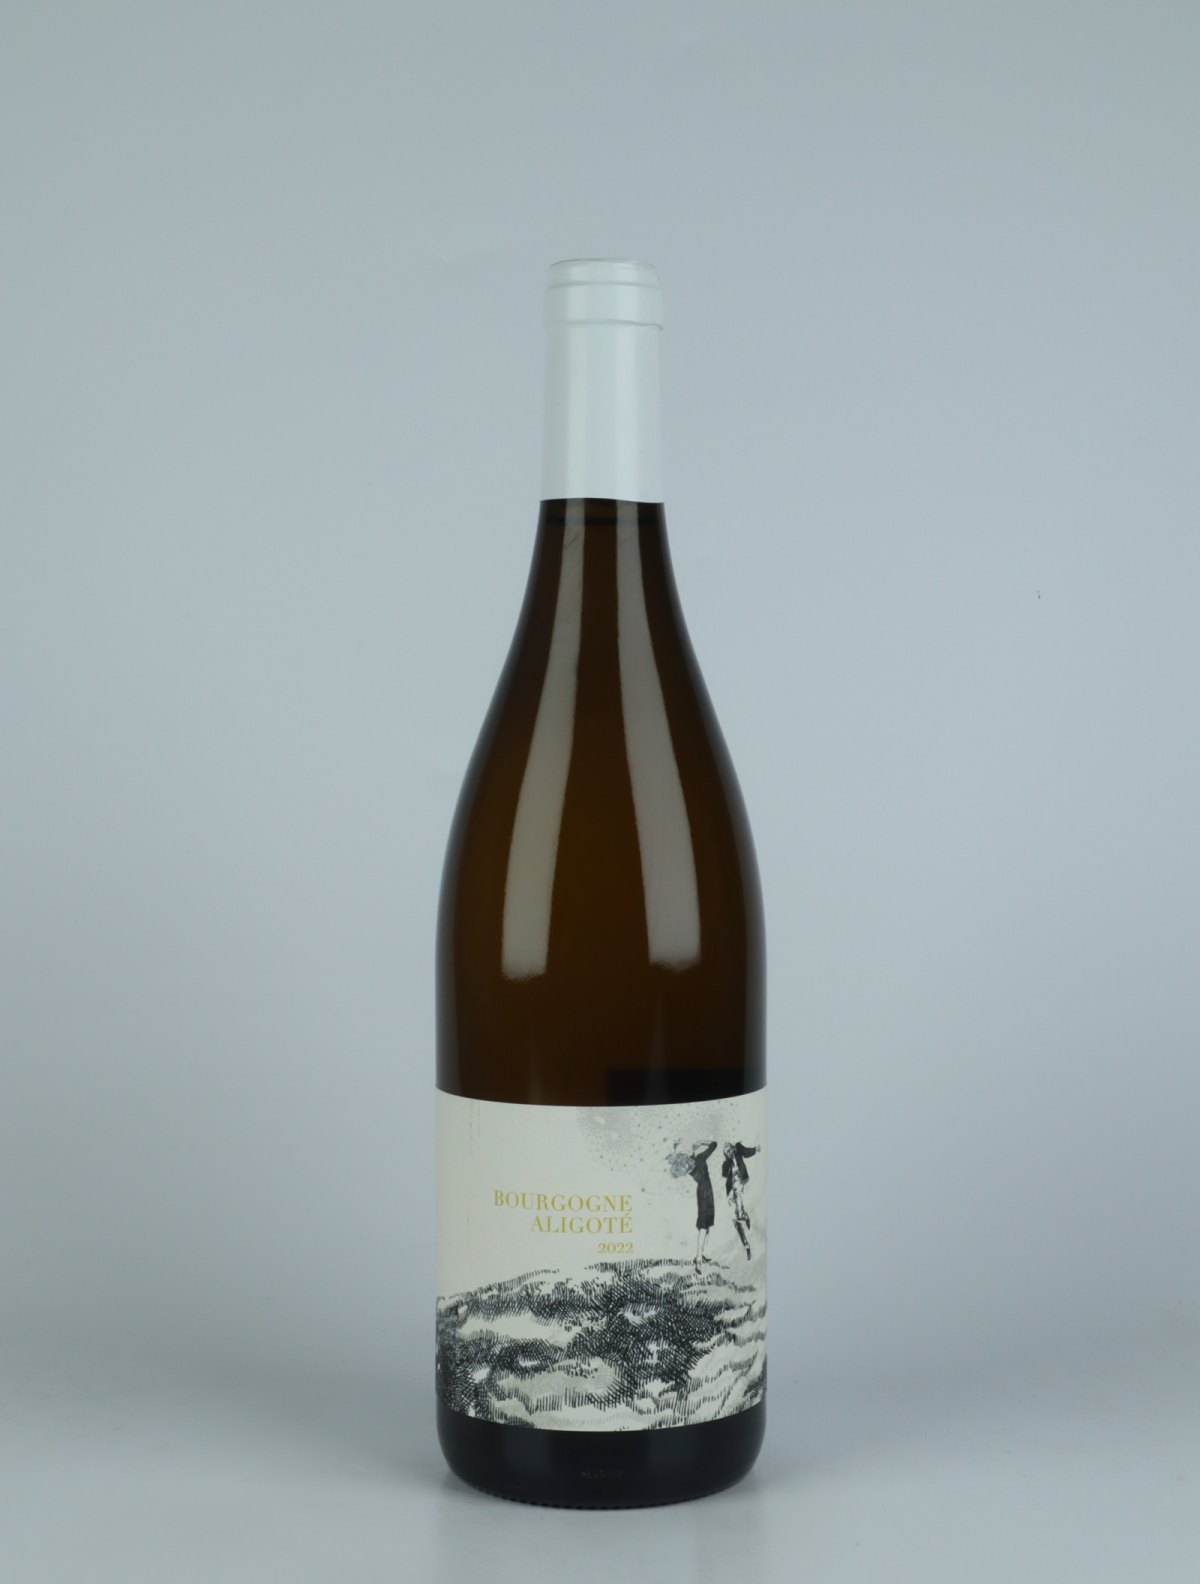 A bottle 2022 Bourgogne Aligoté White wine from Domaine Didon, Burgundy in France